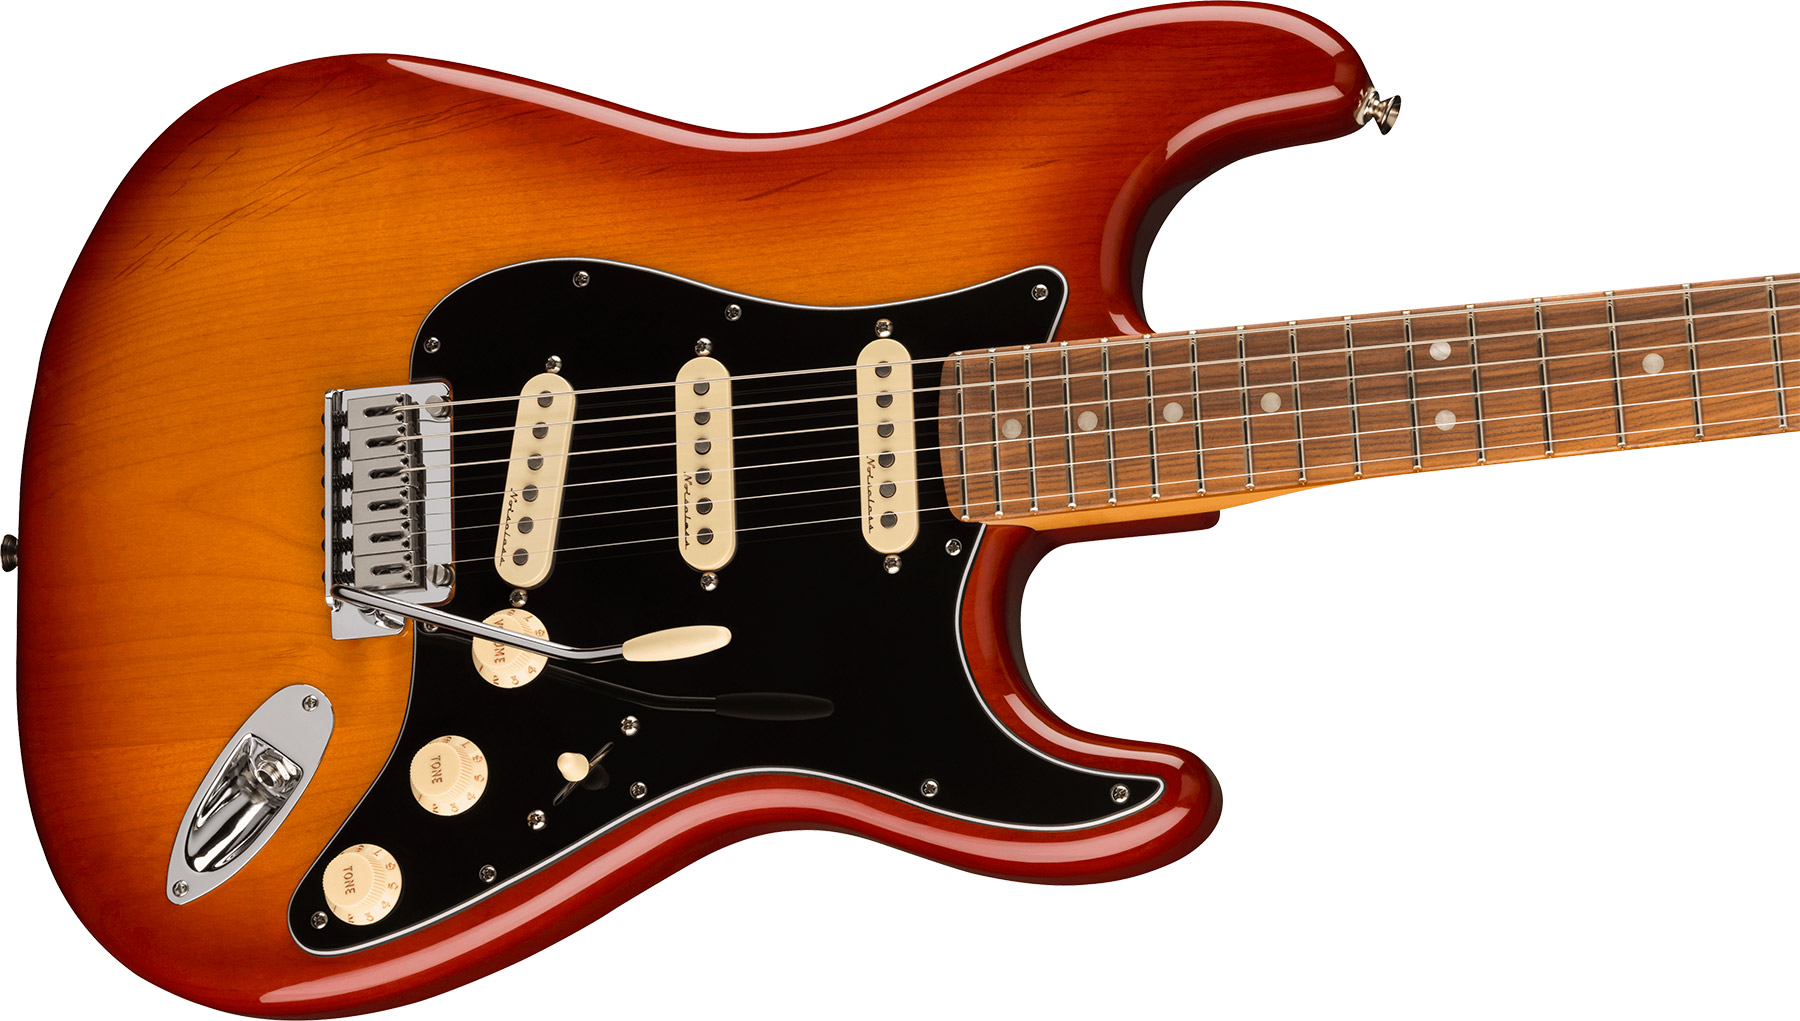 Fender Strat Player Plus Mex 2023 3s Trem Pf - Sienna Sunburst - Elektrische gitaar in Str-vorm - Variation 2